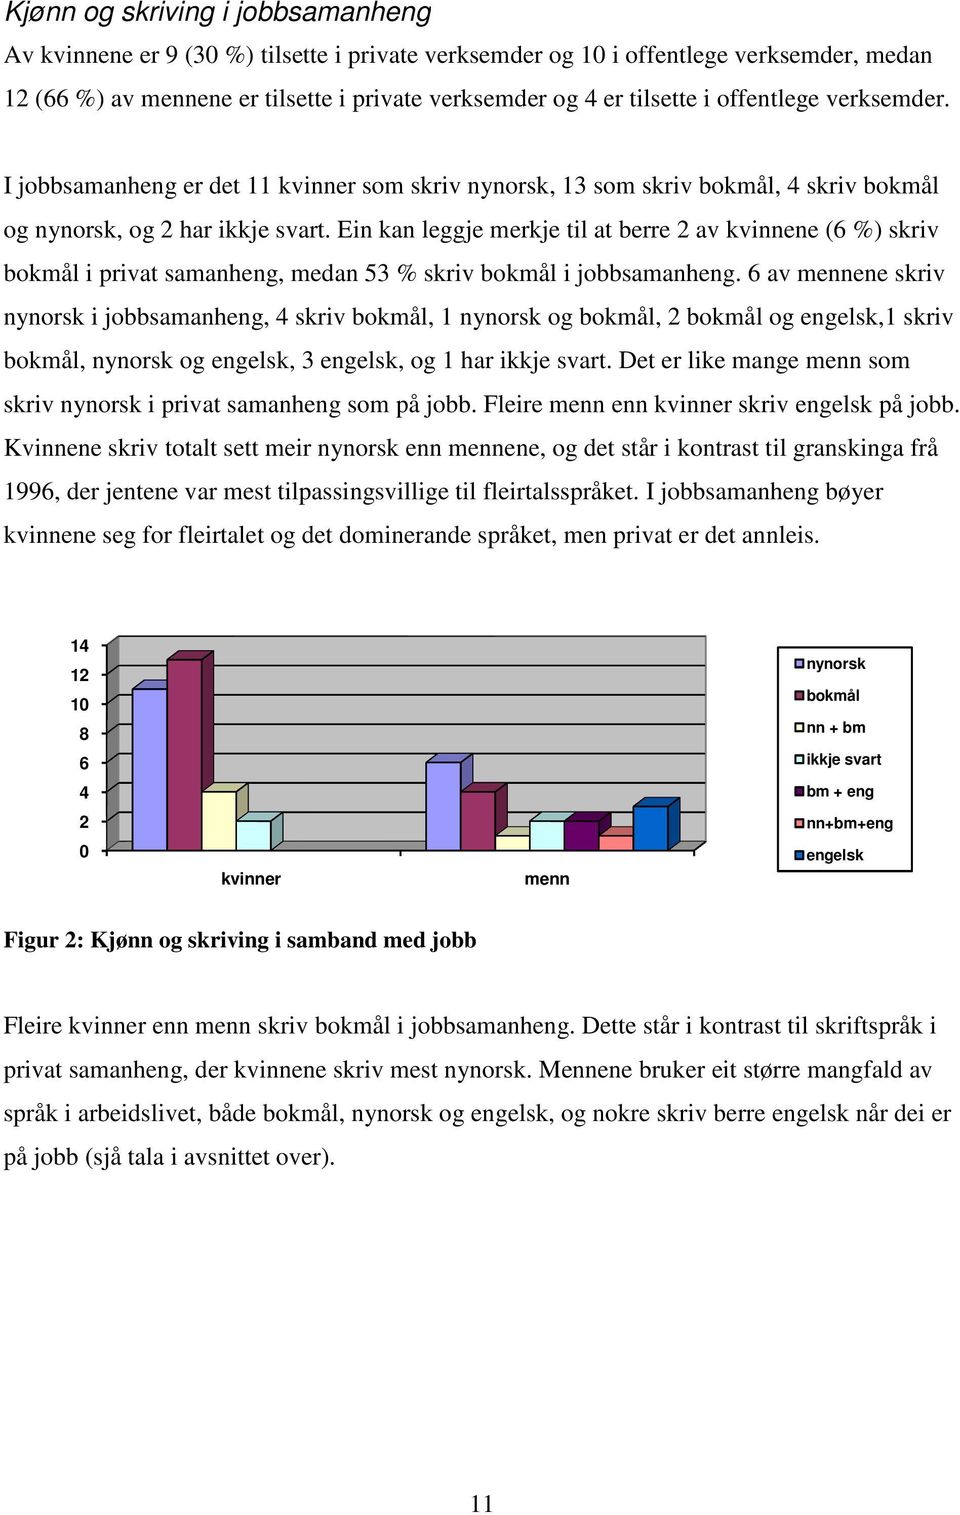 Ein kan leggje merkje til at berre 2 av kvinnene (6 %) skriv bokmål i privat samanheng, medan 53 % skriv bokmål i jobbsamanheng. bsamanheng.